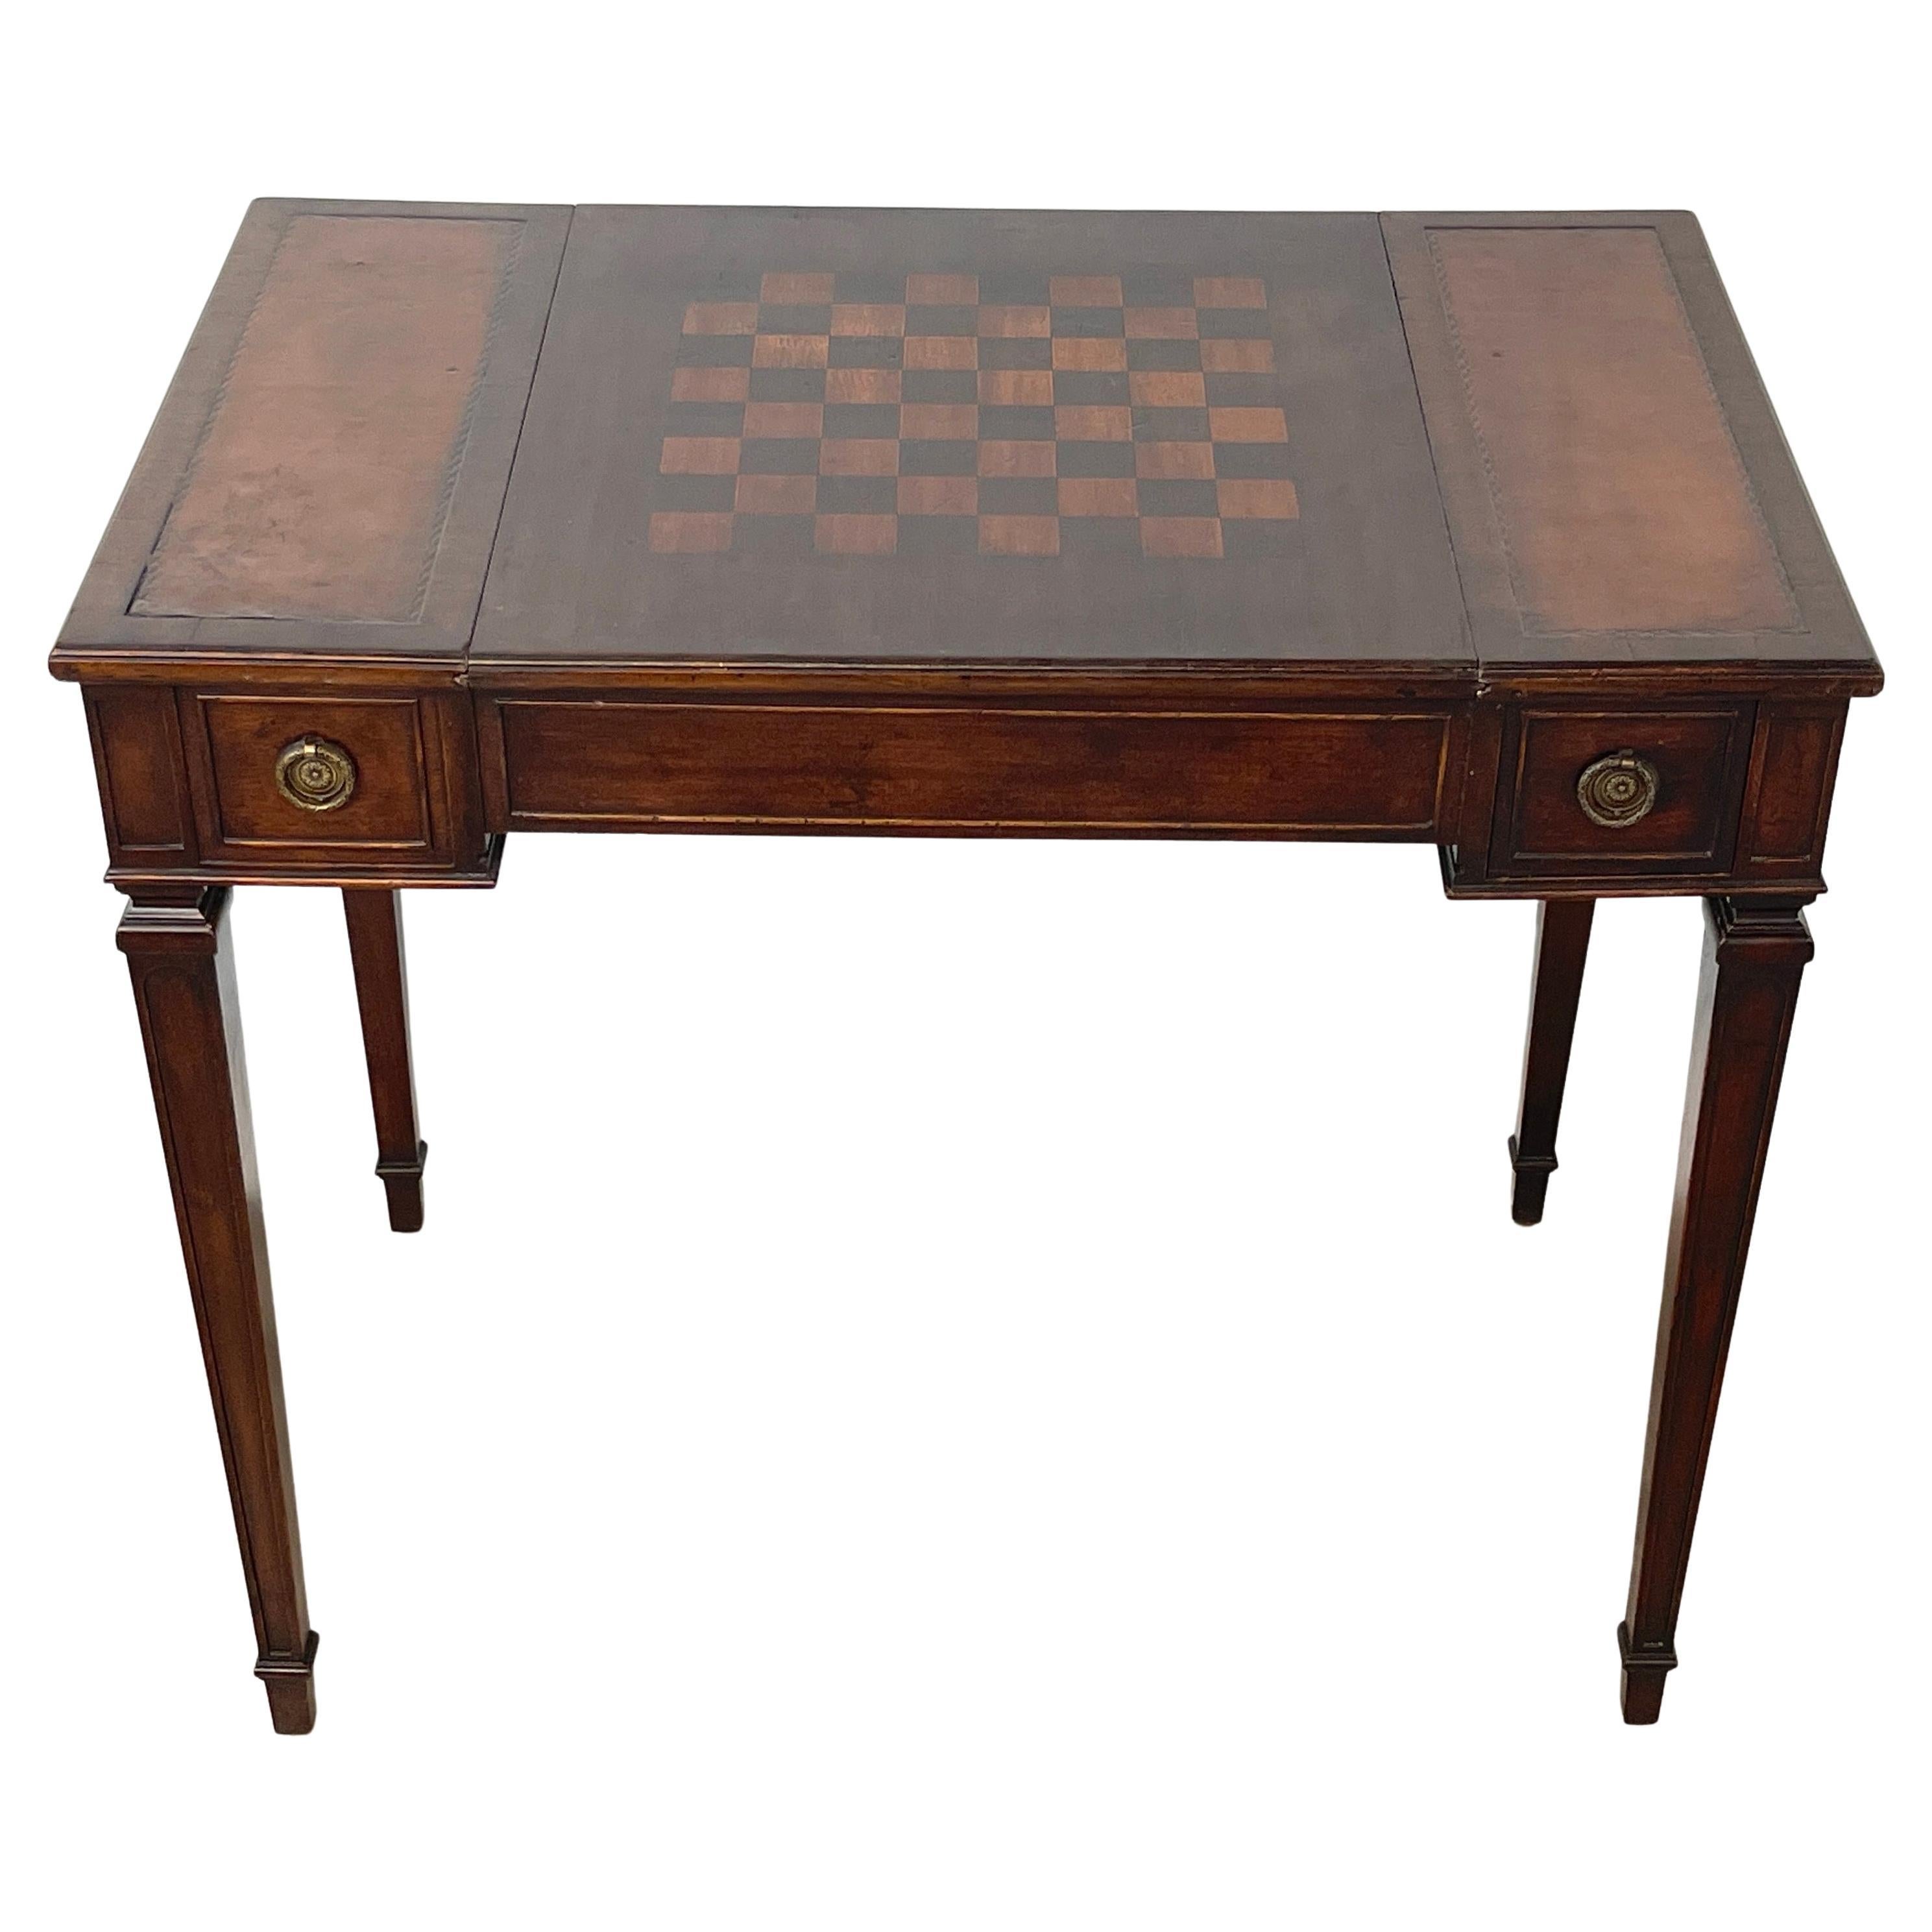 Kleiner französischer neoklassizistischer Spieltisch aus Mahagoni mit Intarsien